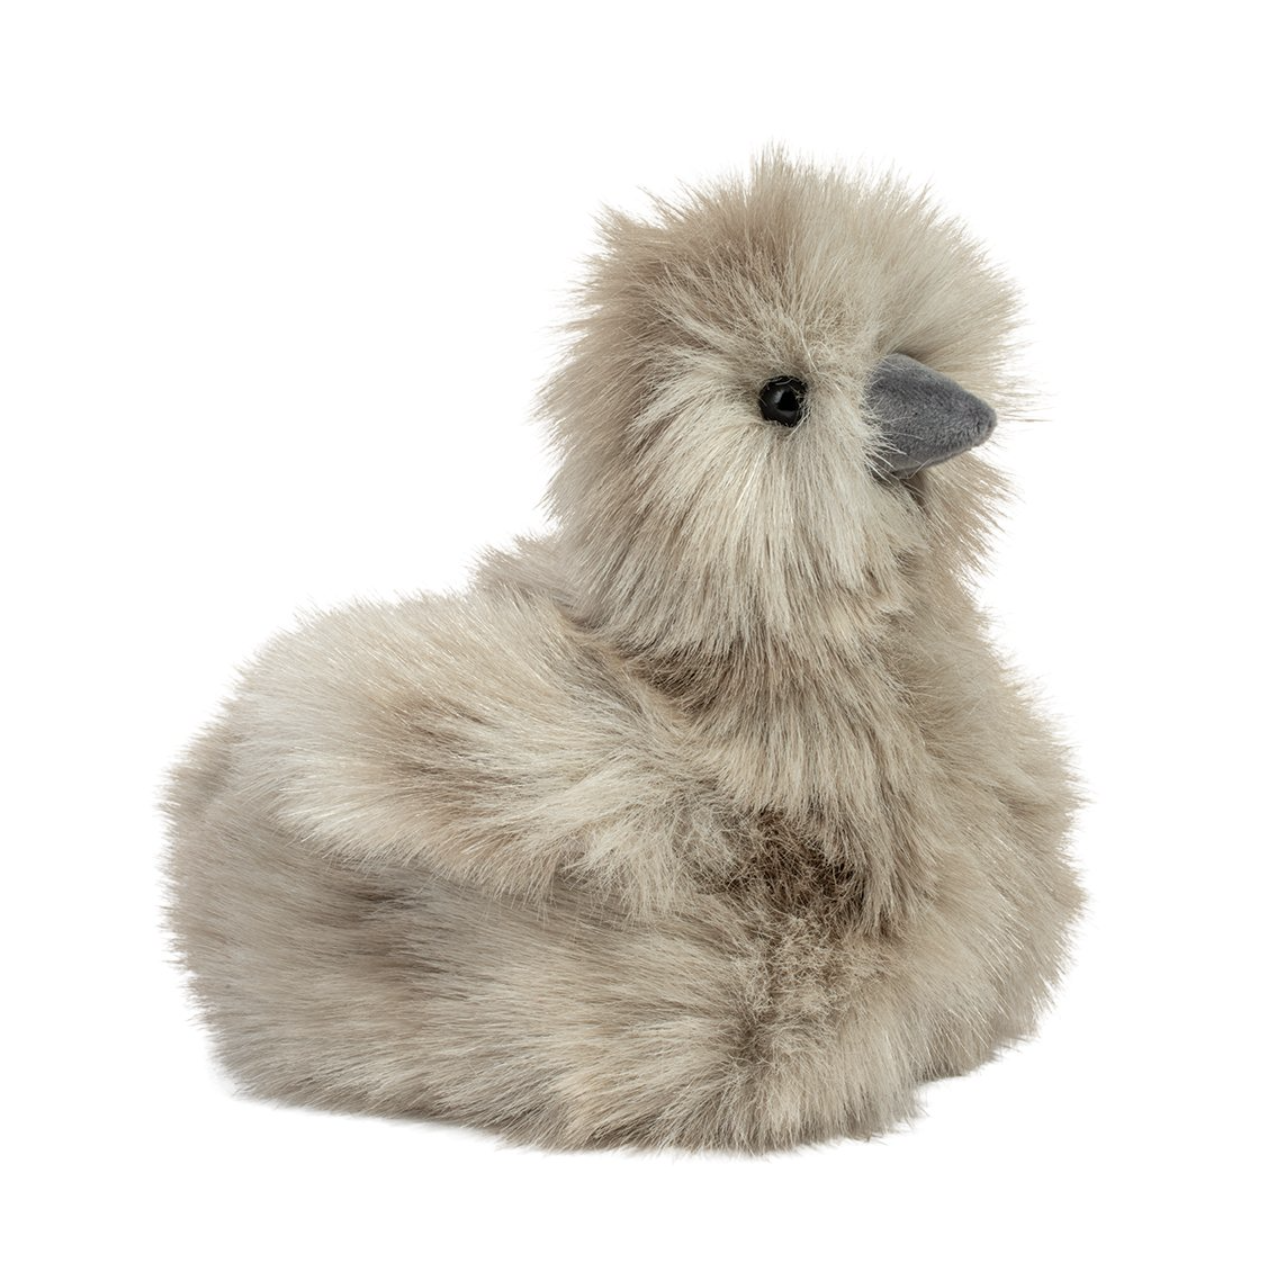 Zara Grey Silkie Chick Plush